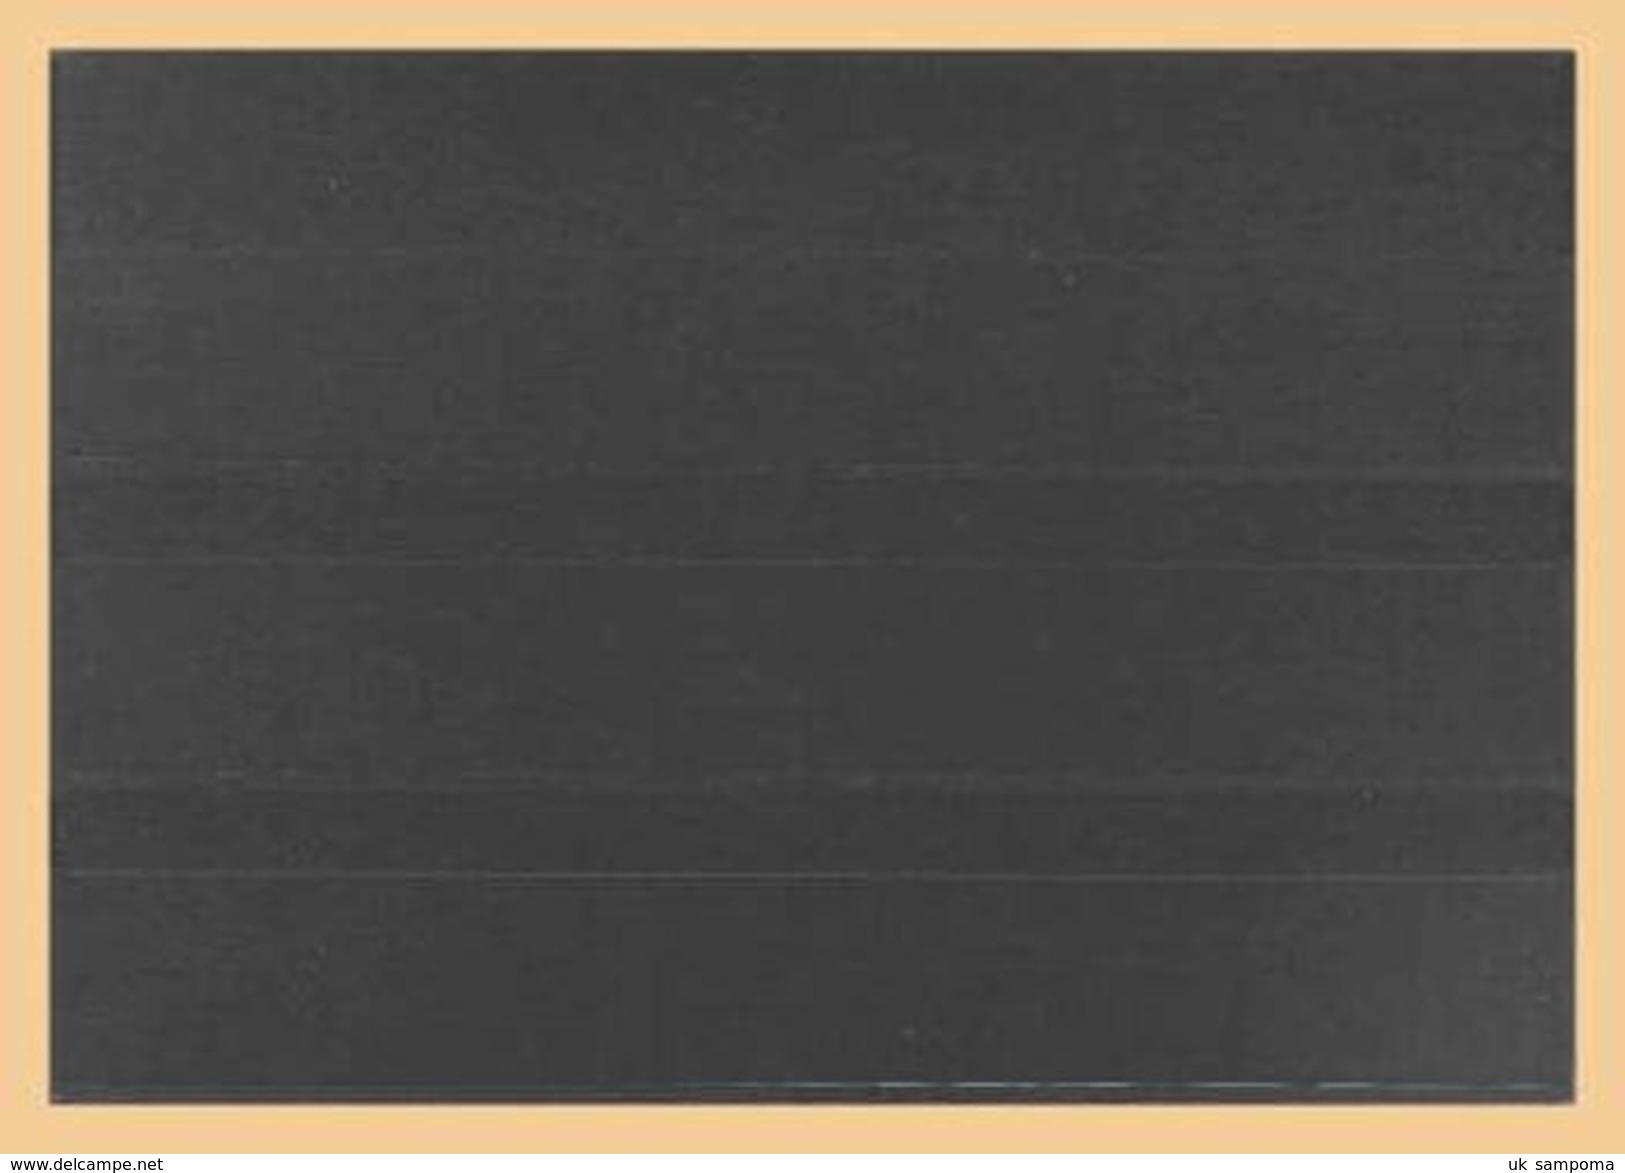 50x KOBRA-Einsteckkarte Nr. K03 - Einsteckkarten